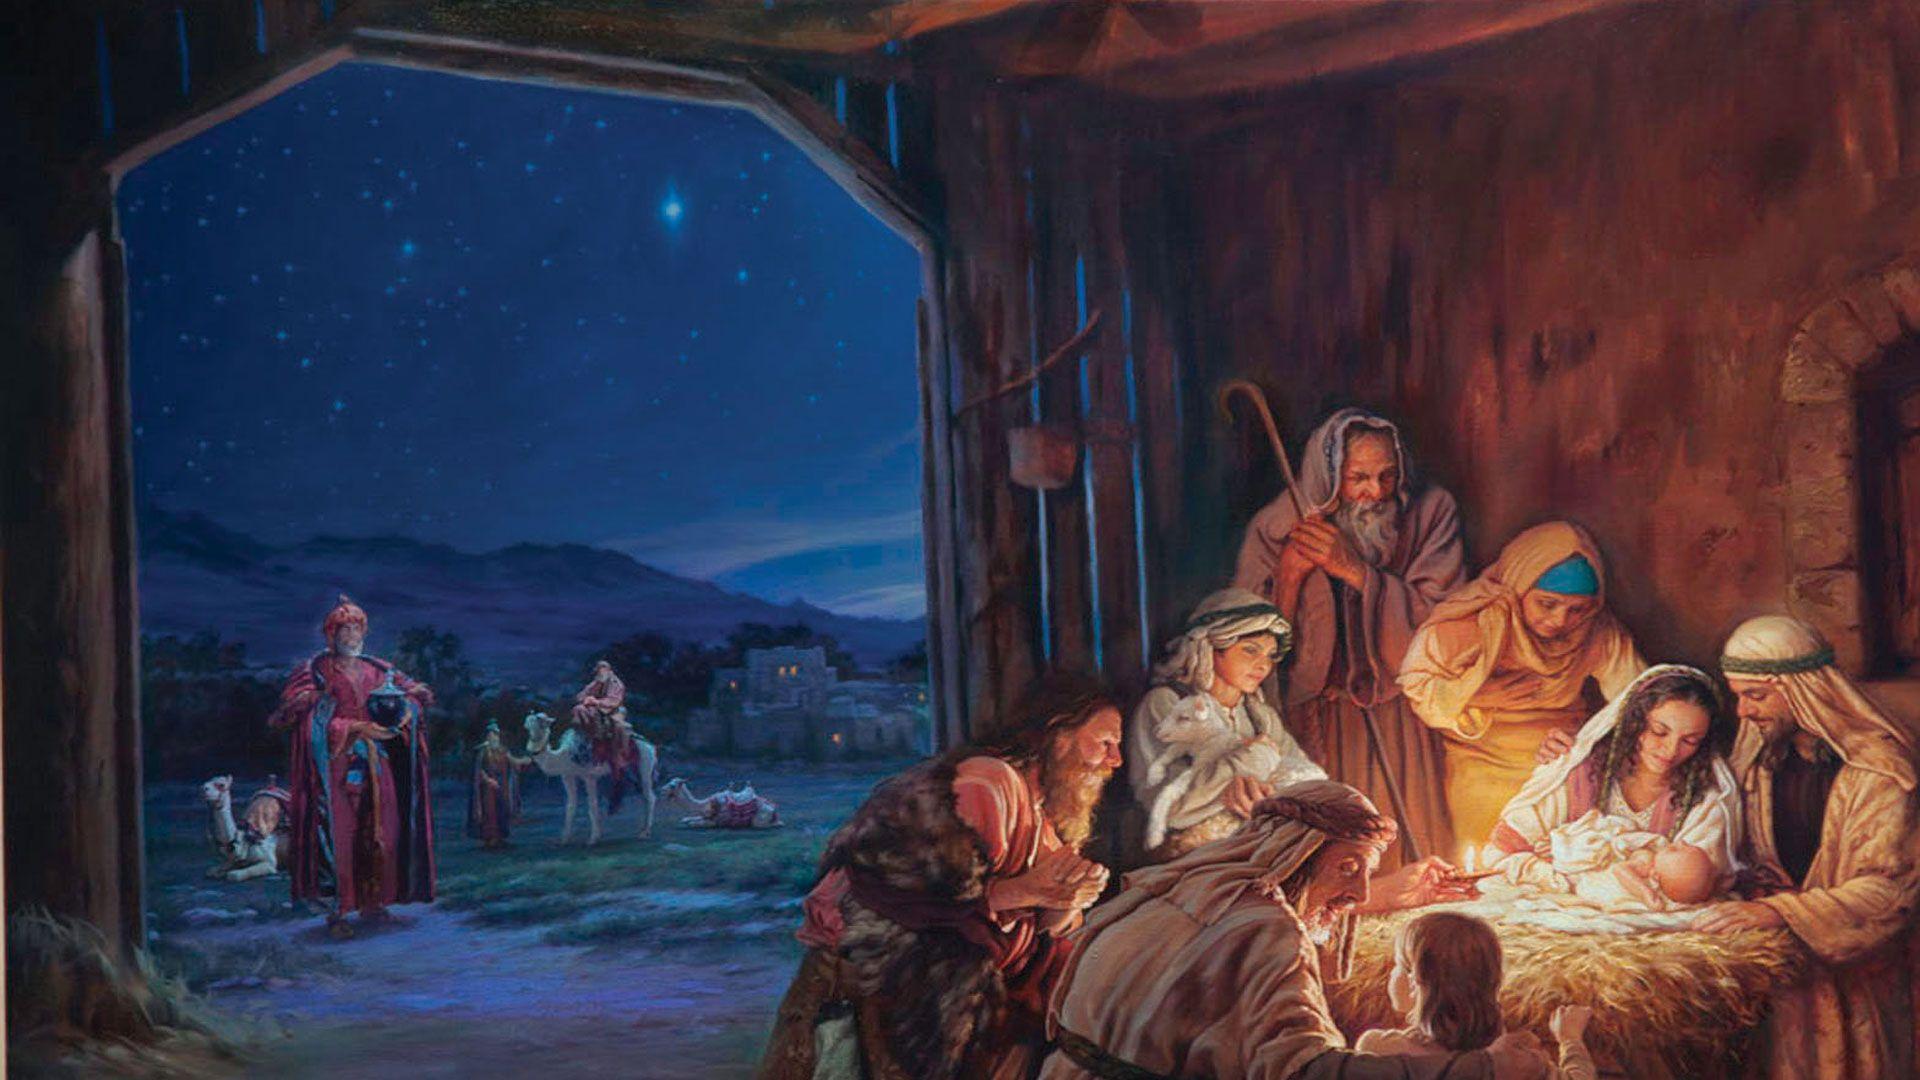 Holy Family Nativity Wallpapers - Top Free Holy Family Nativity ...